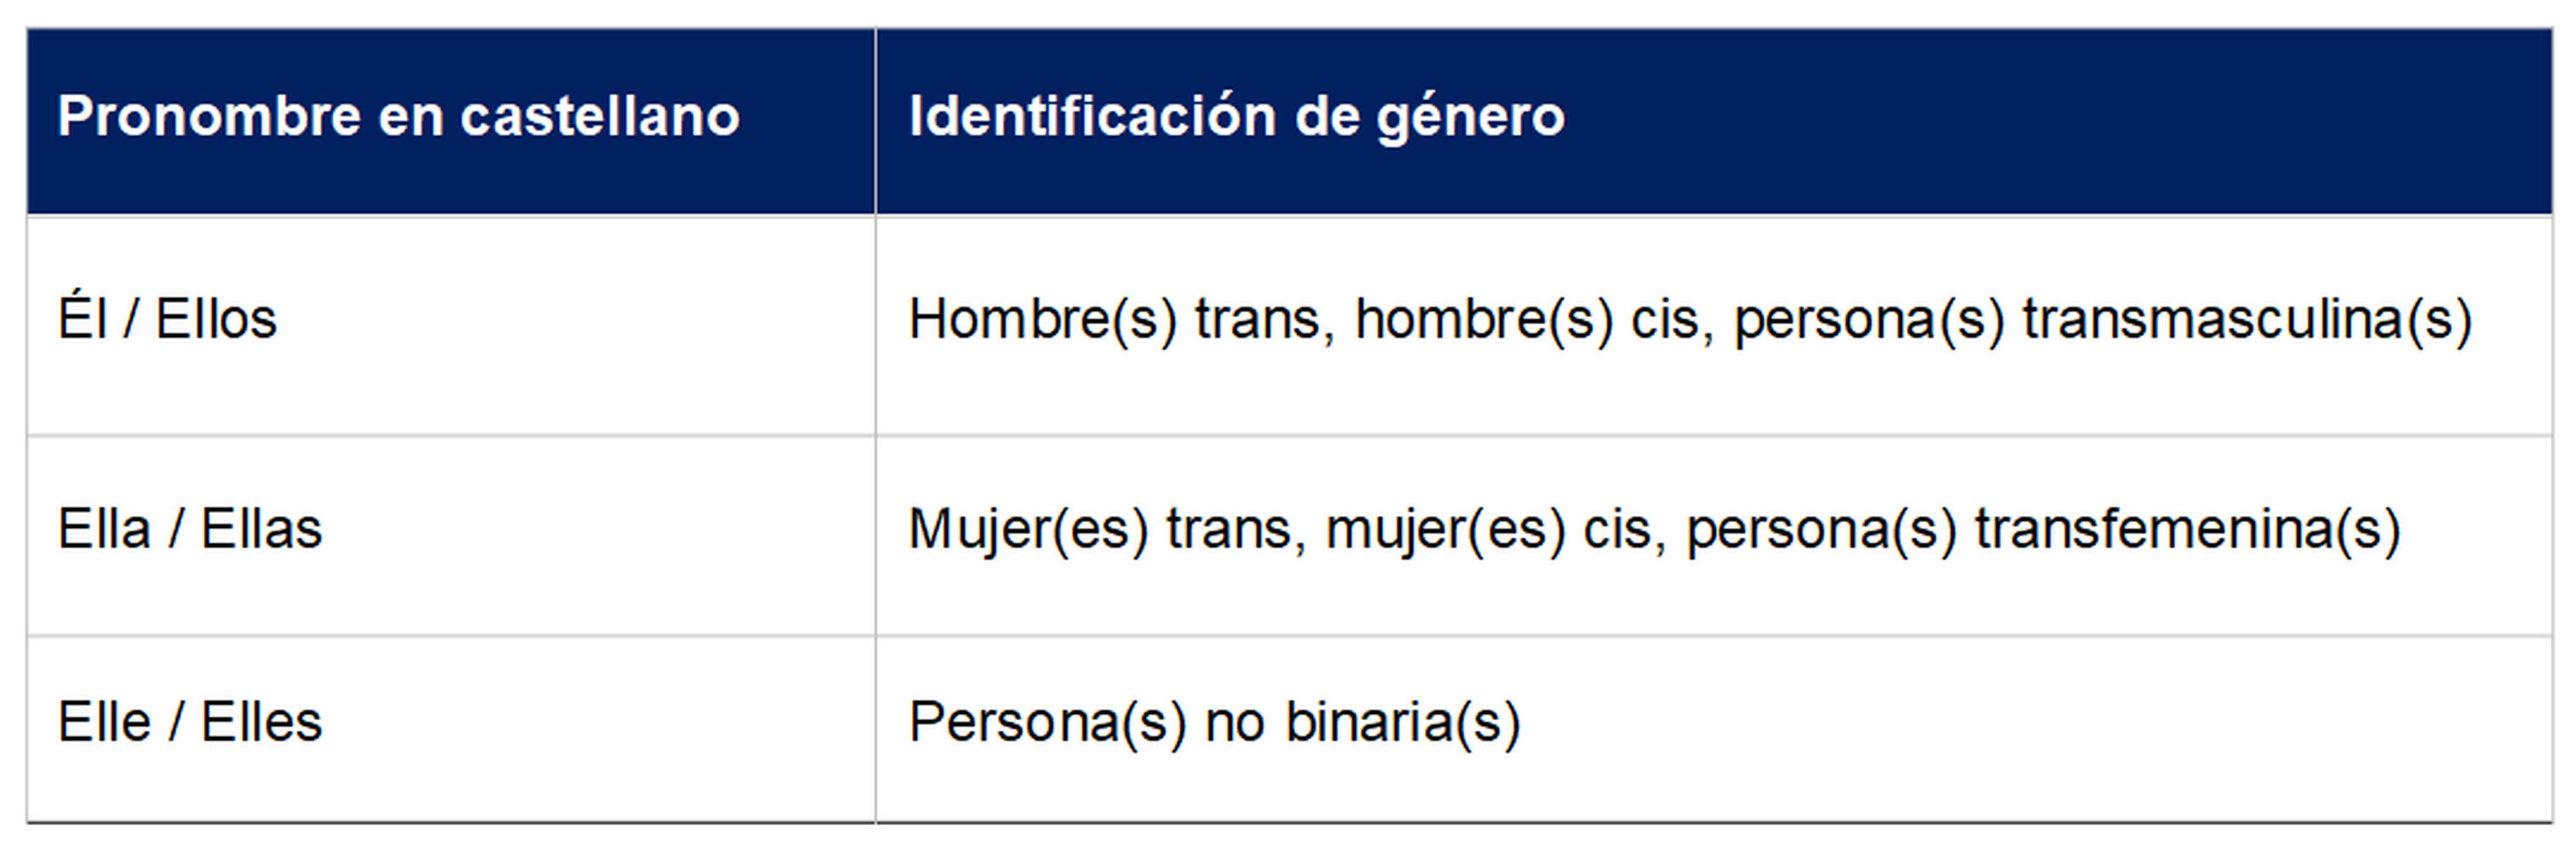 Propuesta de pronombre personal según identificación de género, año 2021